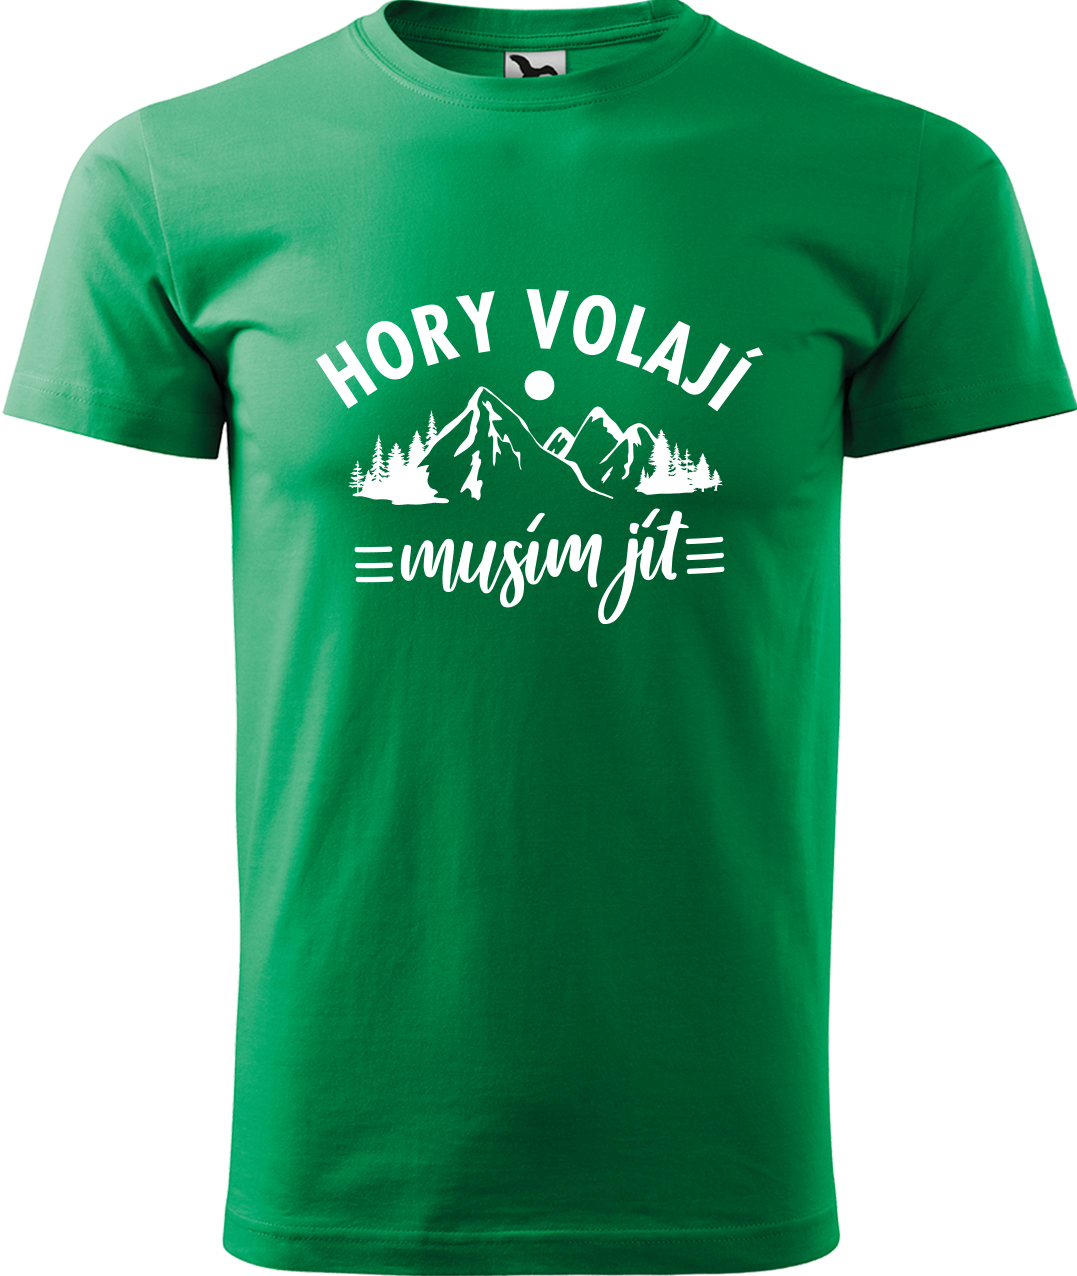 Pánské tričko na hory - Hory volají, musím jít Velikost: L, Barva: Středně zelená (16), Střih: pánský